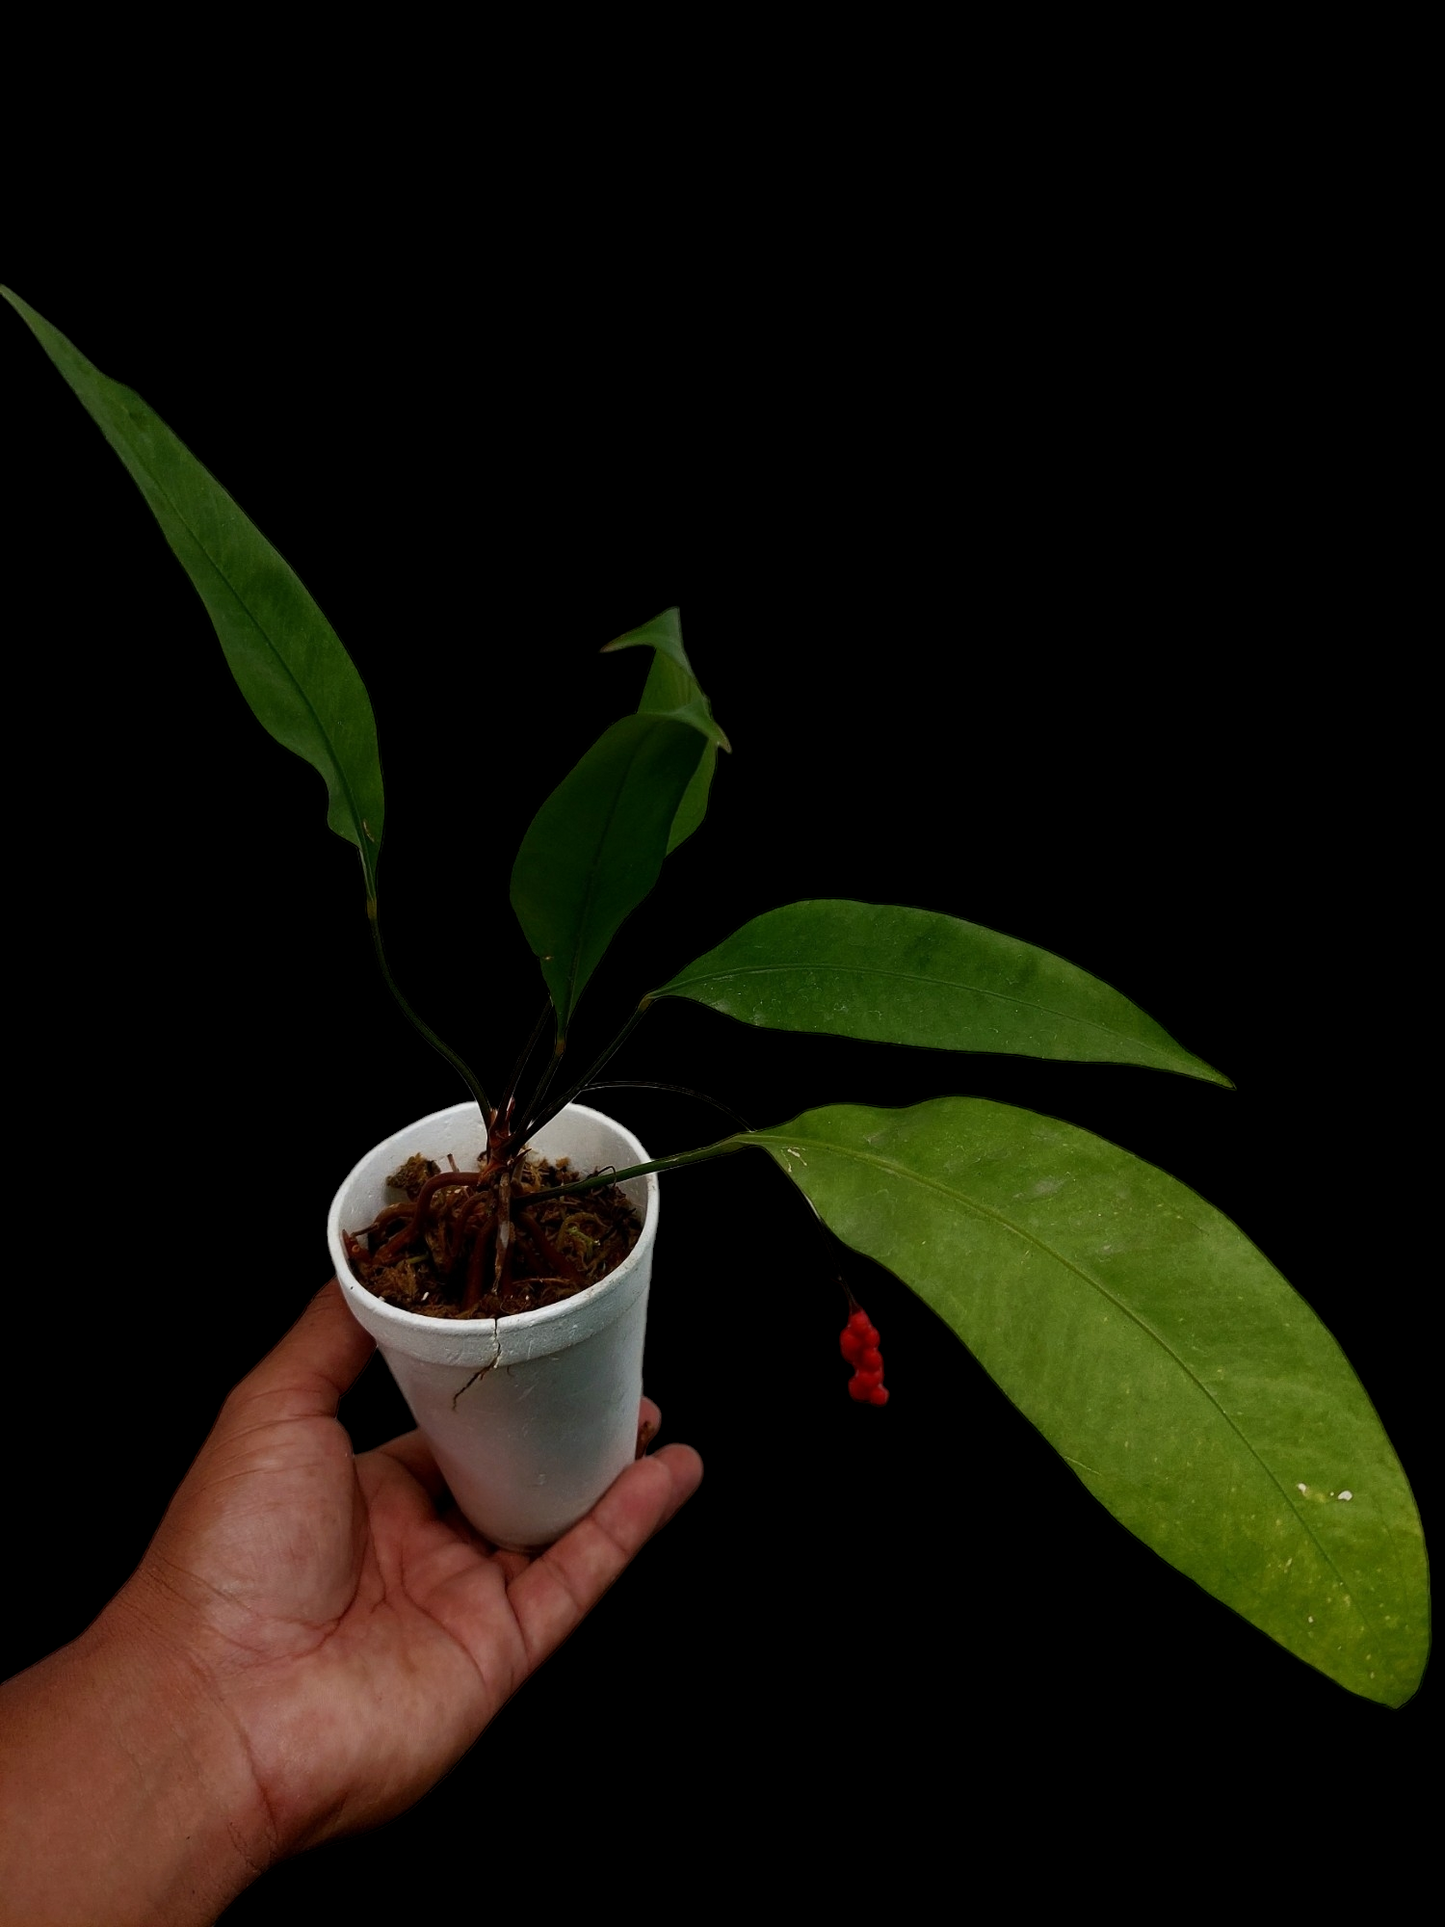 Anthurium Gracilis "Red Pearls" (EXACT PLANT)